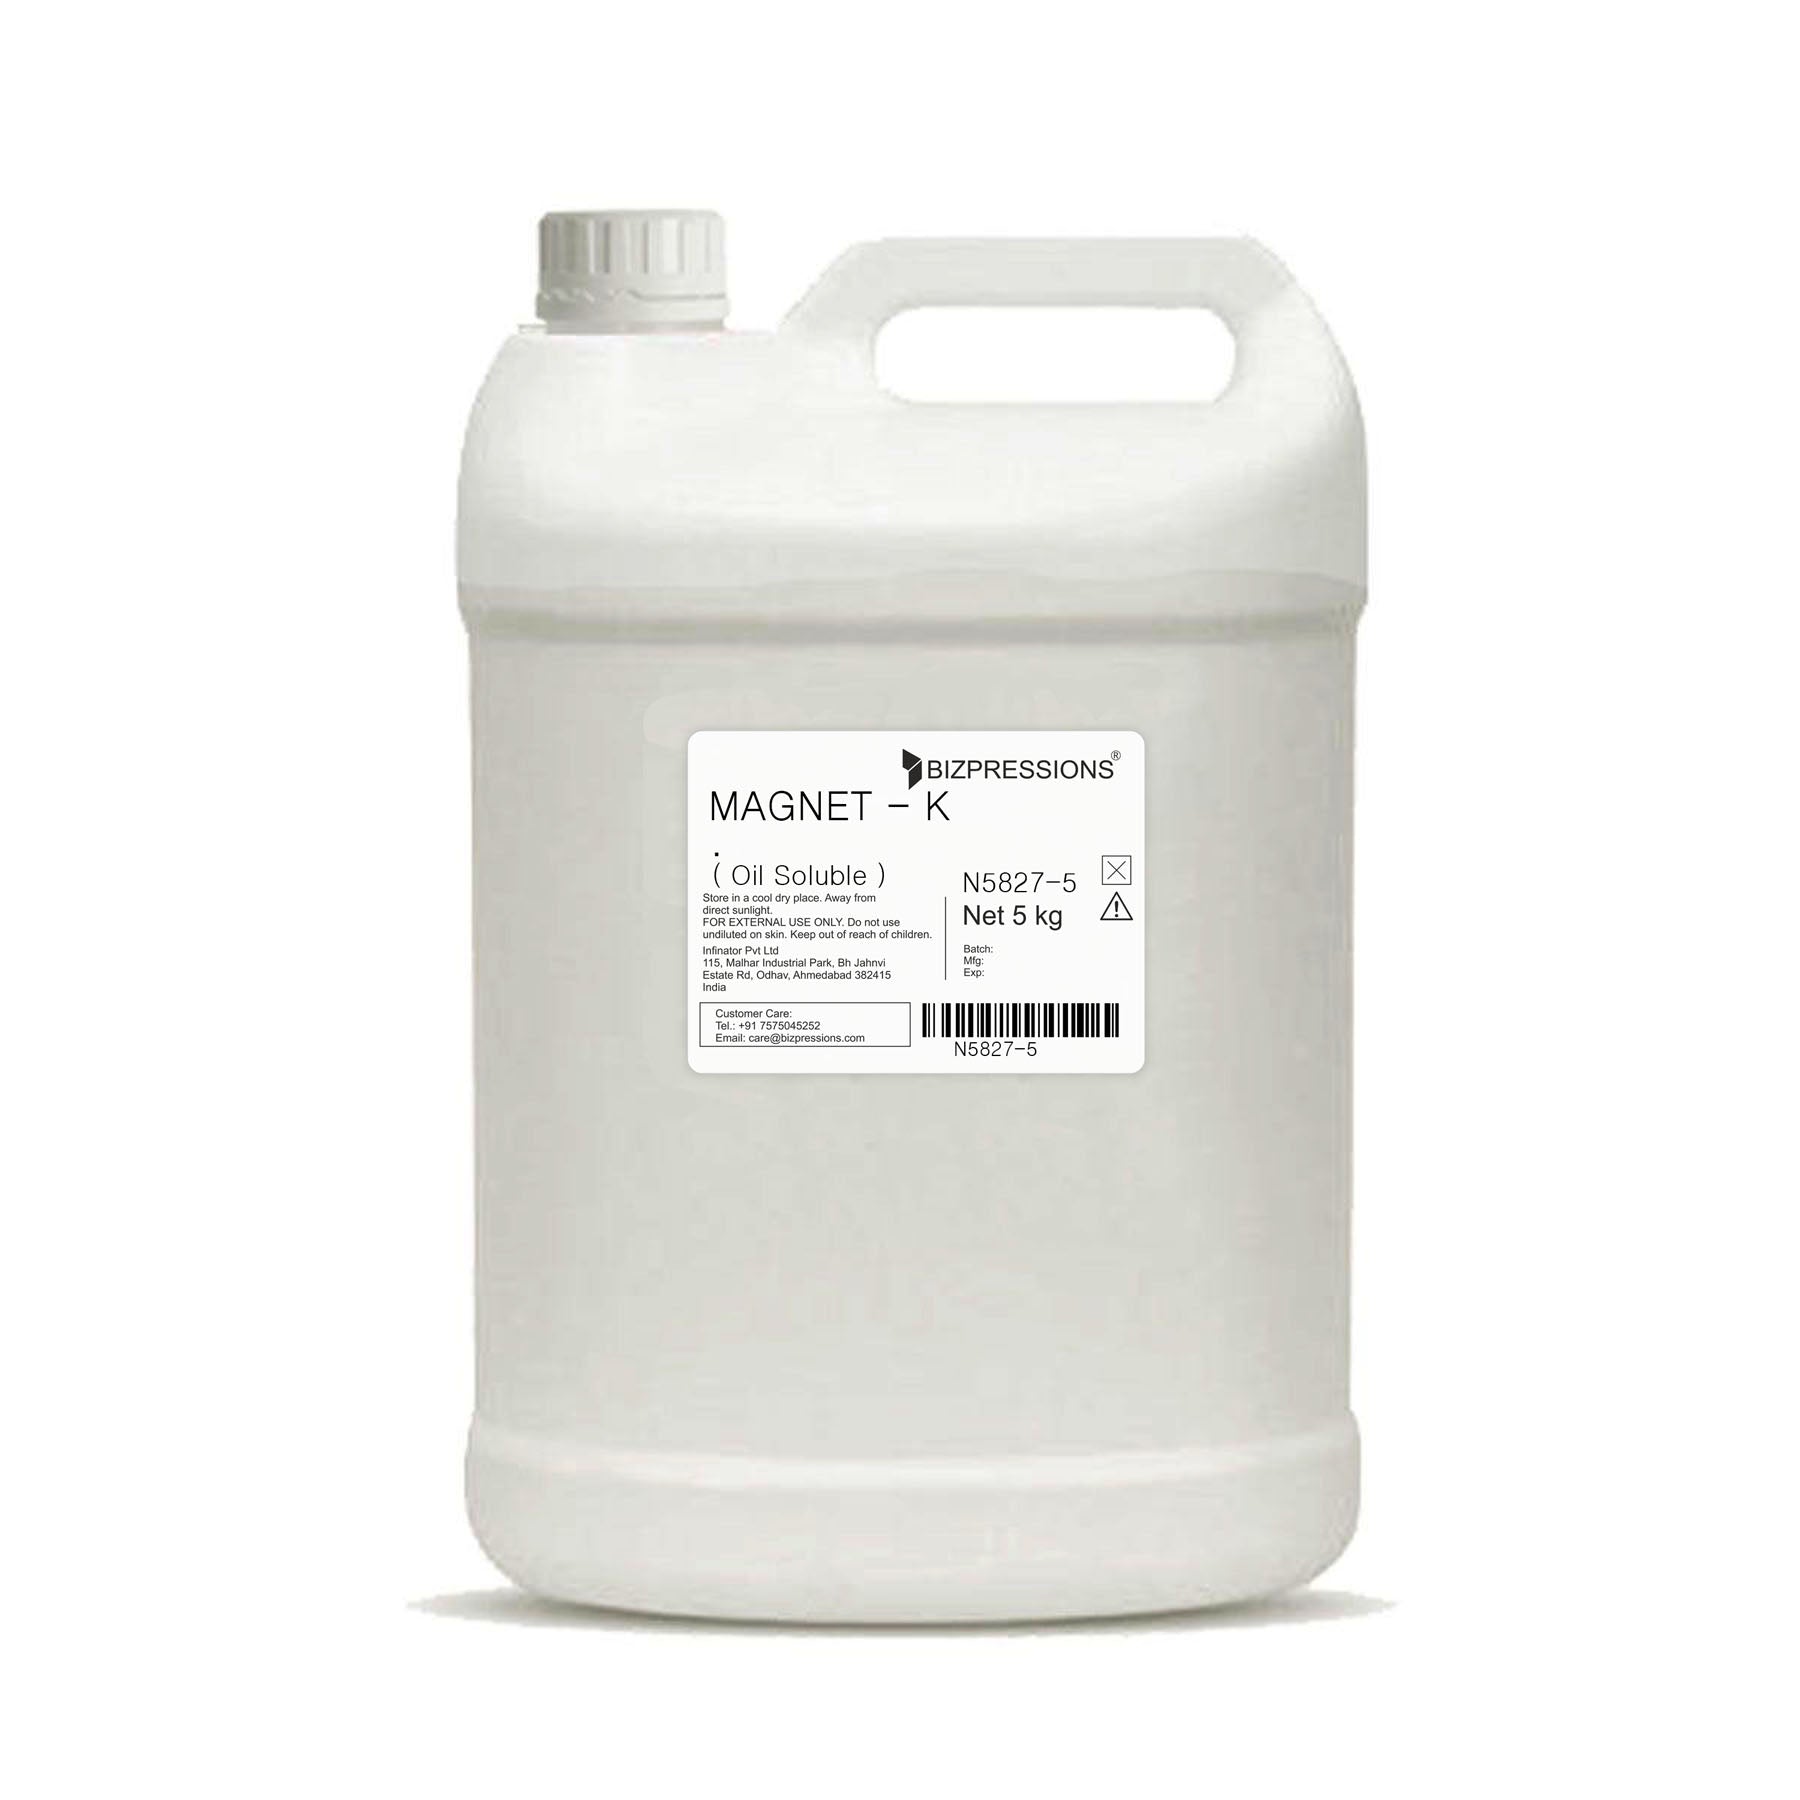 MAGNET - K - Fragrance ( Oil Soluble ) - 5 kg